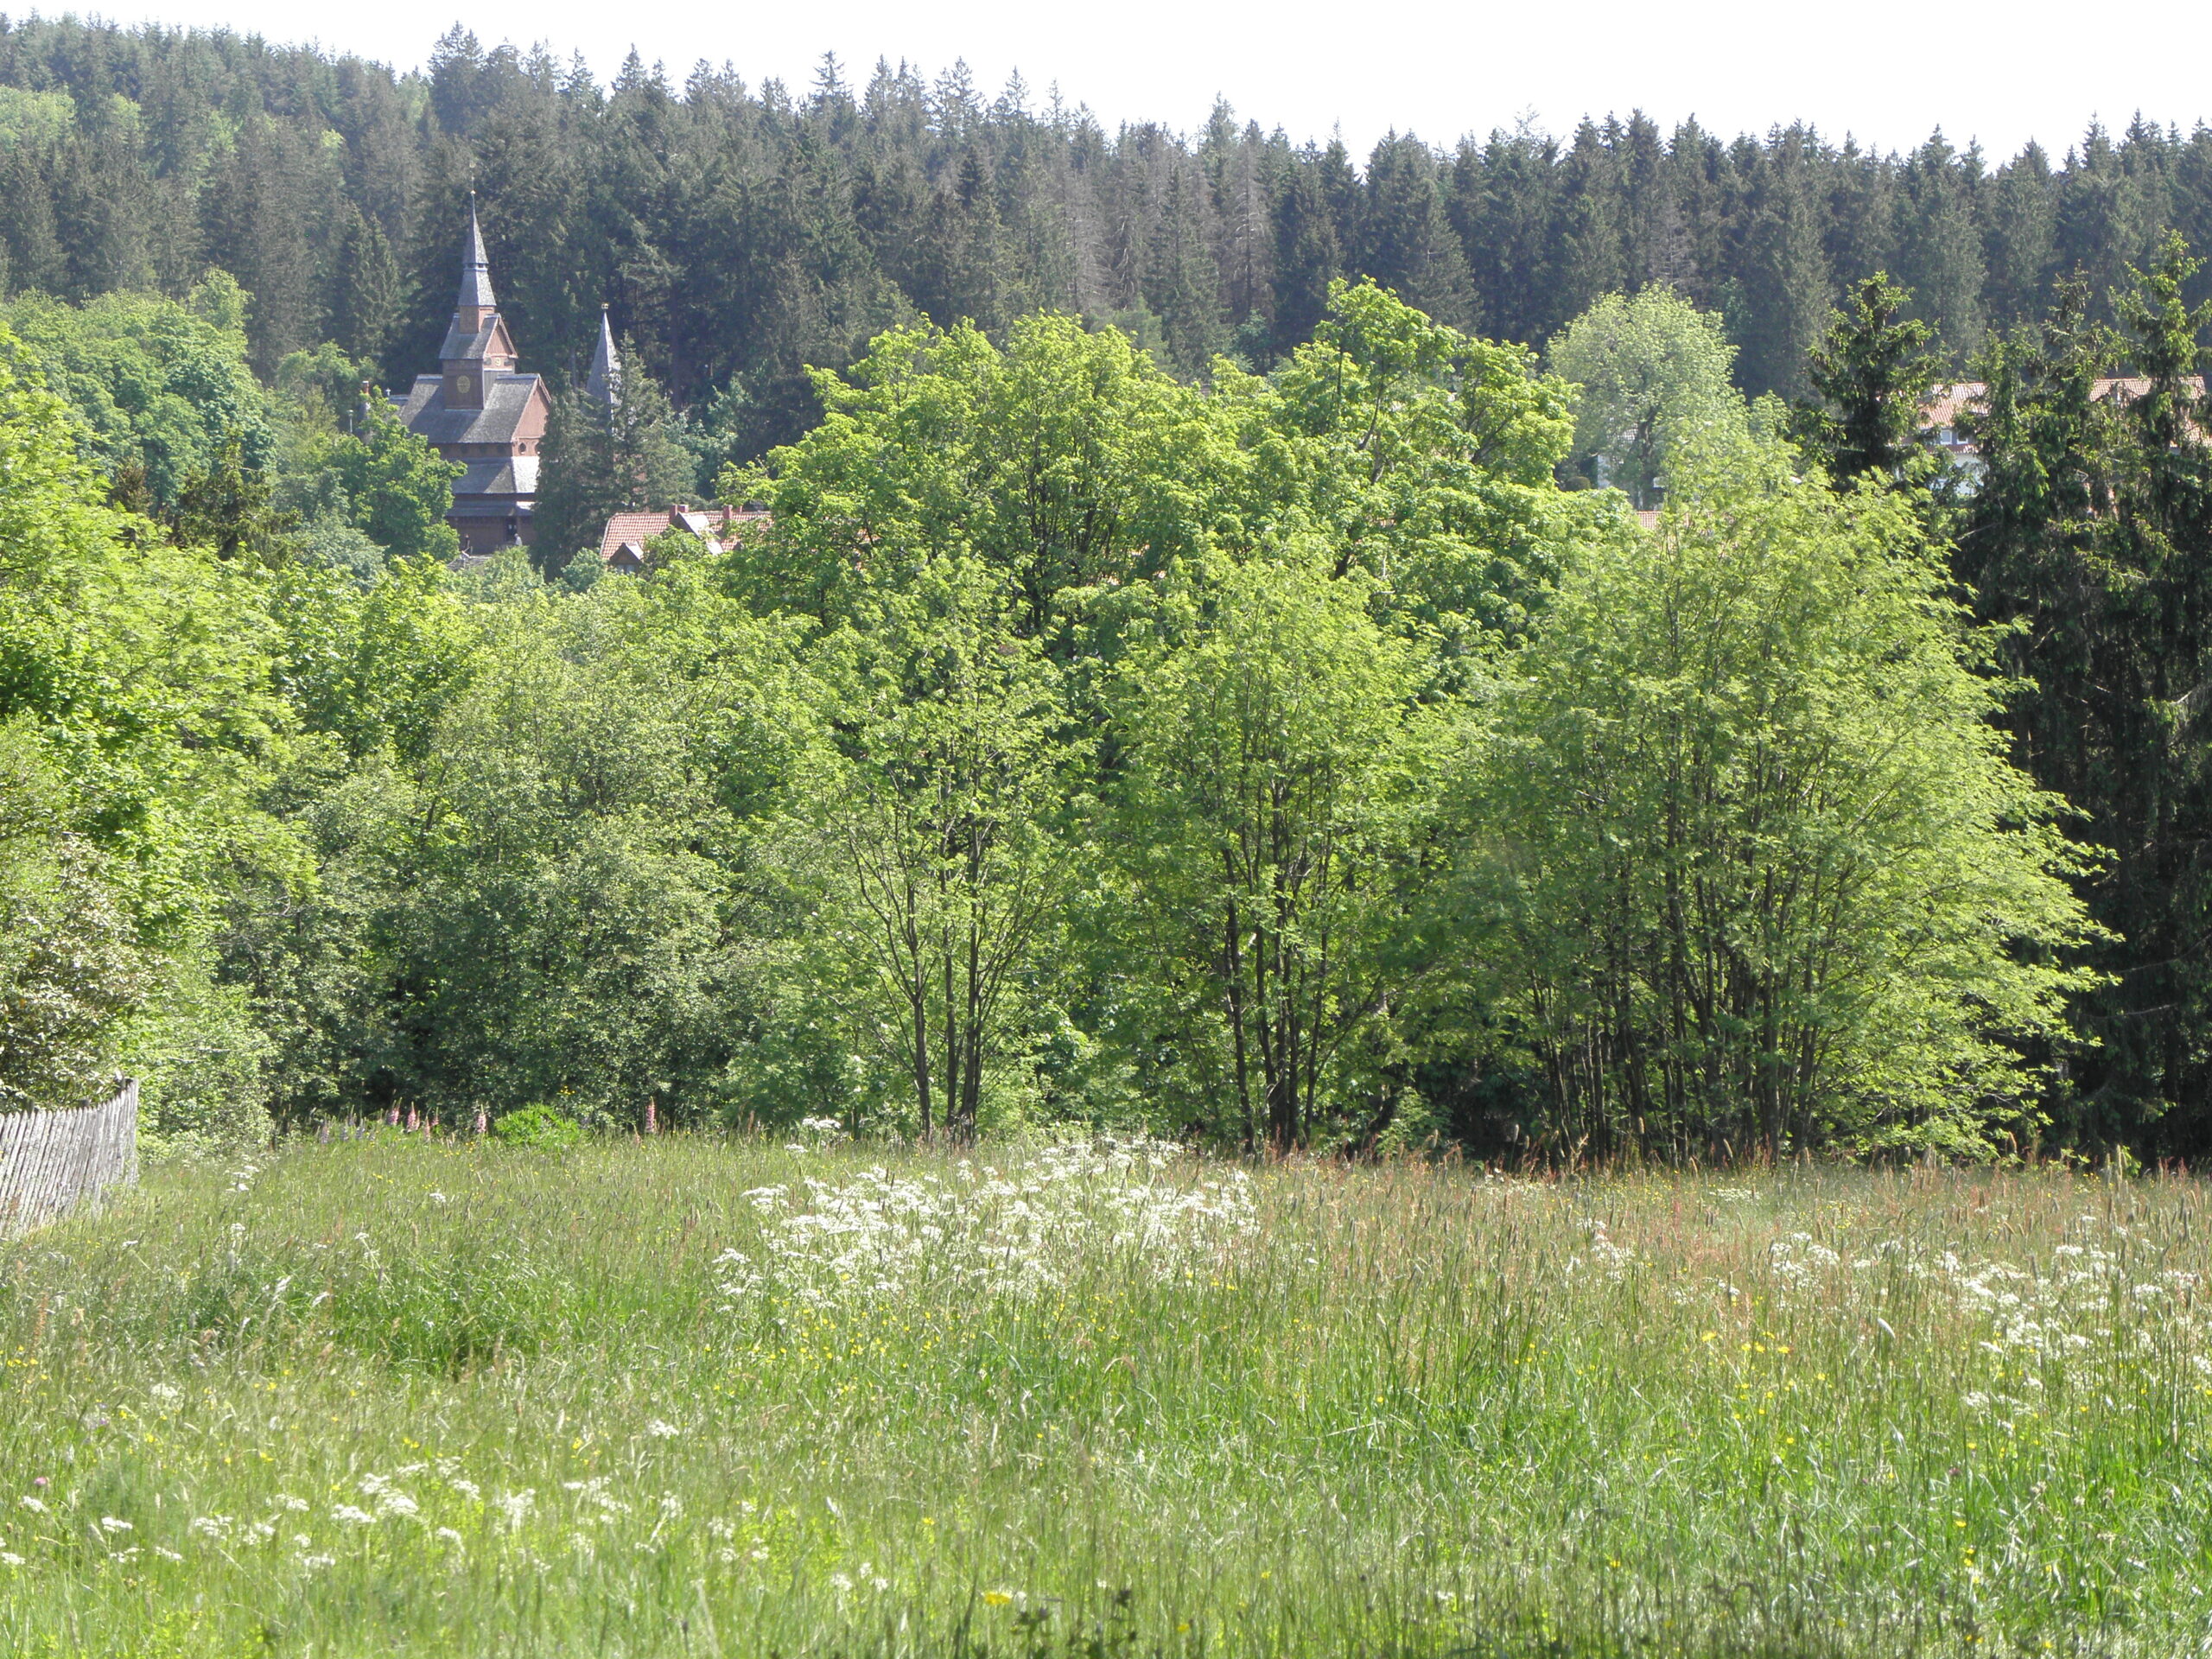 Vor uns befindet sich eine blühende Bergwiese. Hinter einer Baumgruppe ist die Stabkirche Hahnenklee erkennbar.